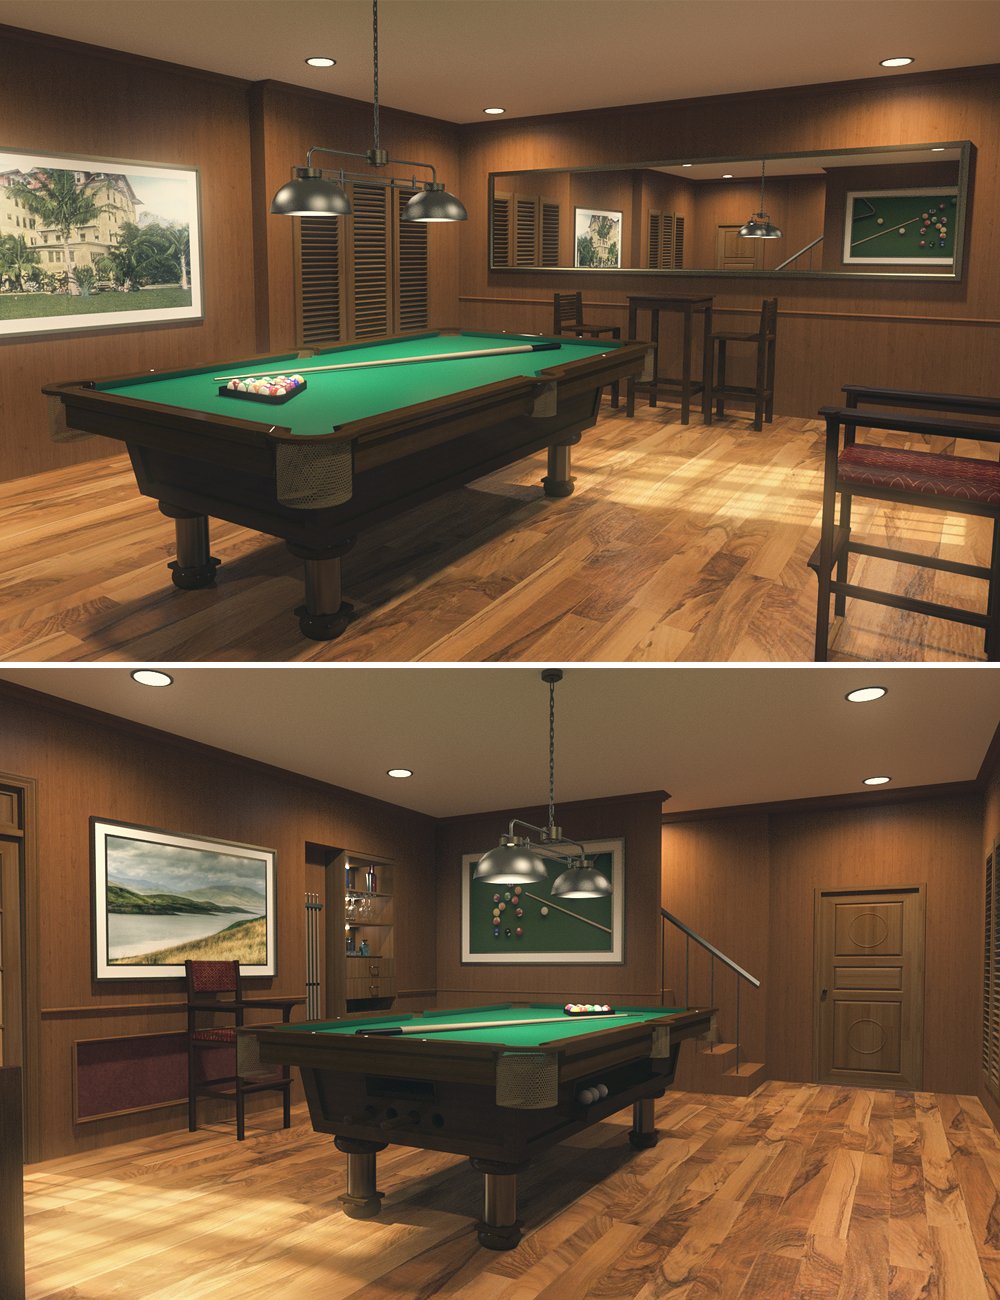 Billiard Room by: PerspectX, 3D Models by Daz 3D